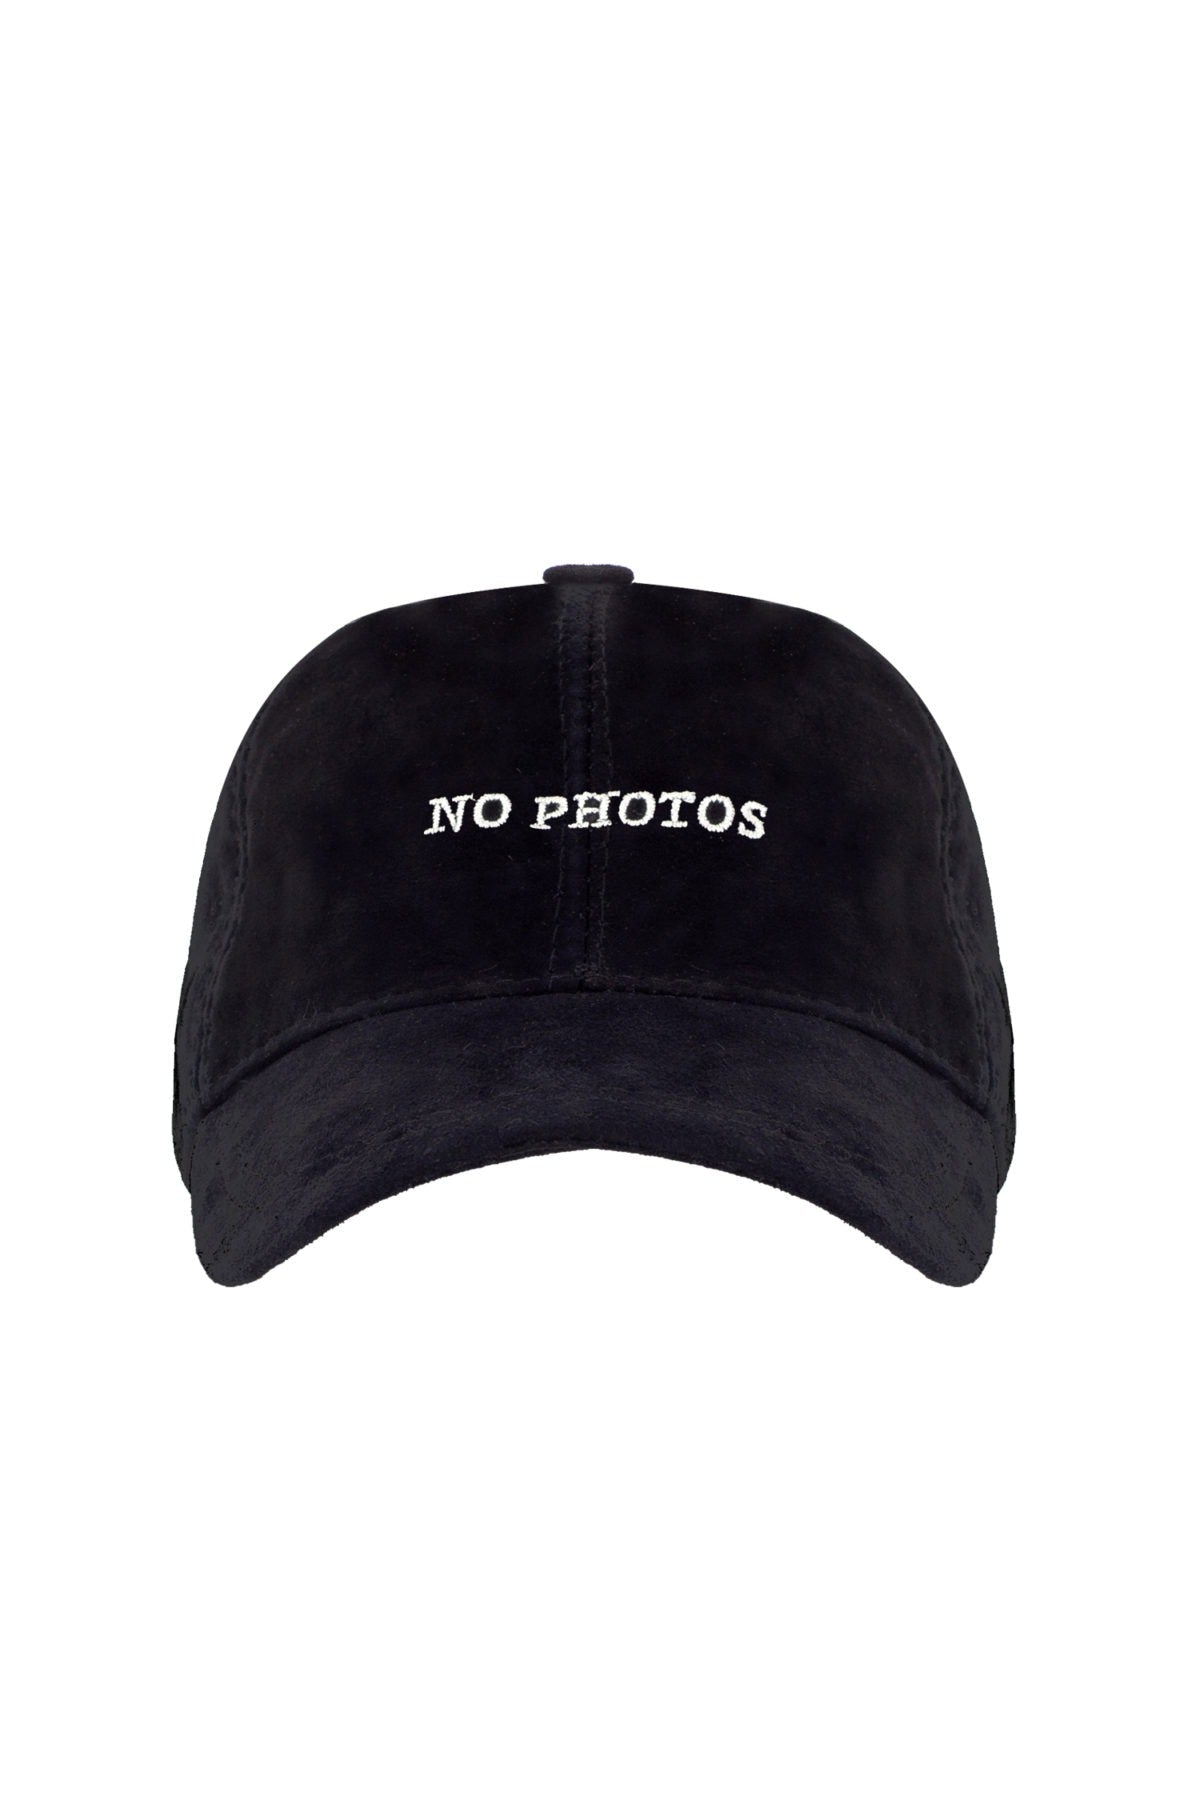 No Photos Please - Black